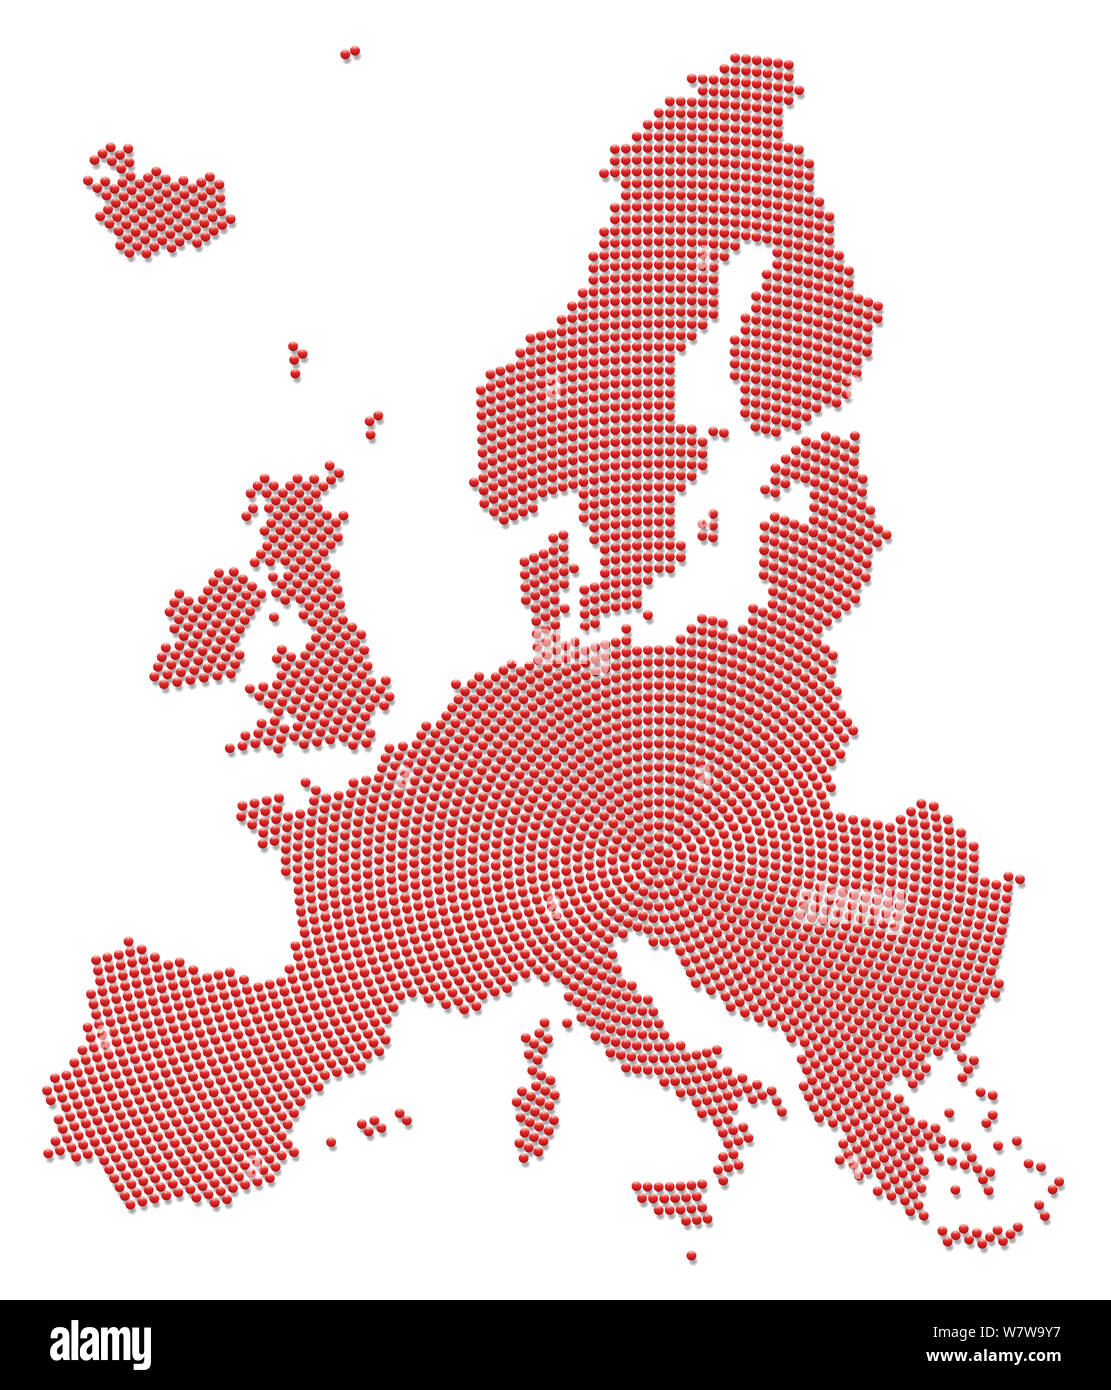 Mappa dell'Europa con molte piccole palle rosse - illustrazione, modello radiale su sfondo bianco. Foto Stock